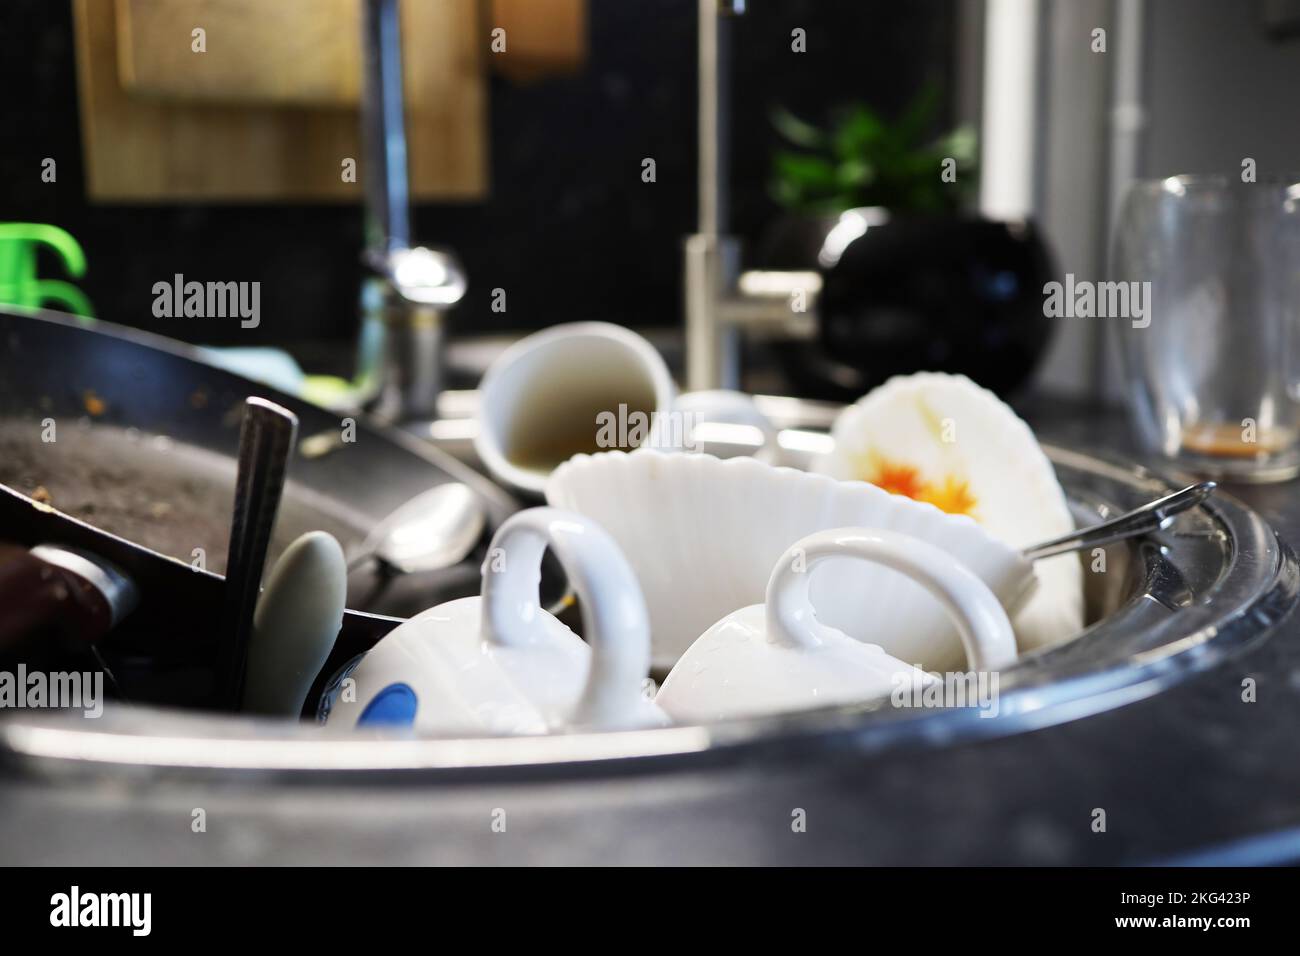 Beaucoup de vaisselle sale dans l'évier de la cuisine Banque D'Images